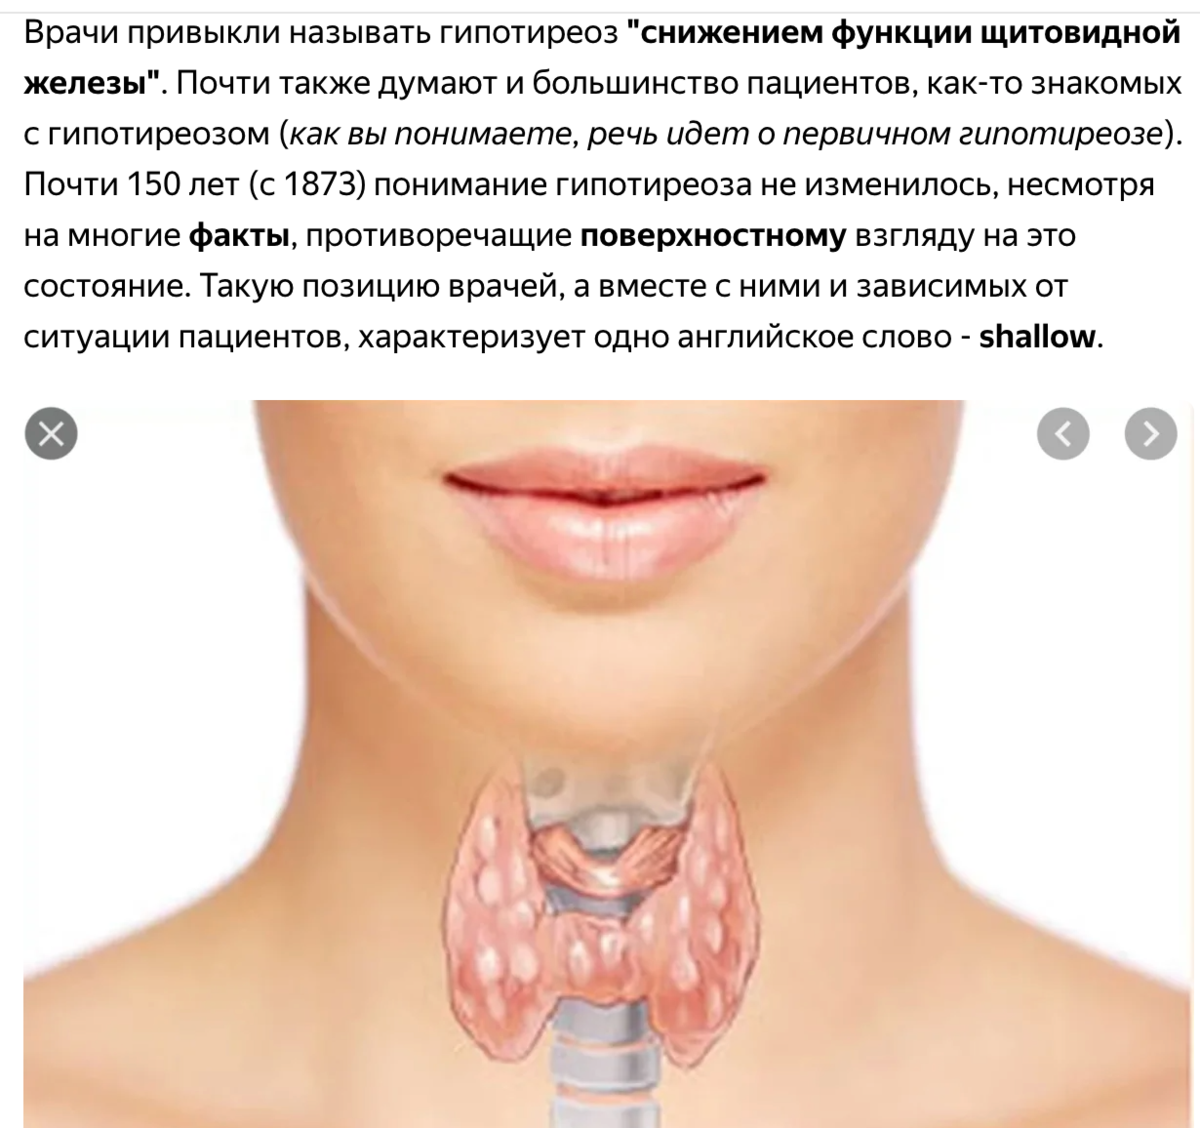 Щитовидной железы спб. Болезни щитовидной железы памятка. Шея. Здоровая щитовидная железа у женщин. Ковид и щитовидная железа.